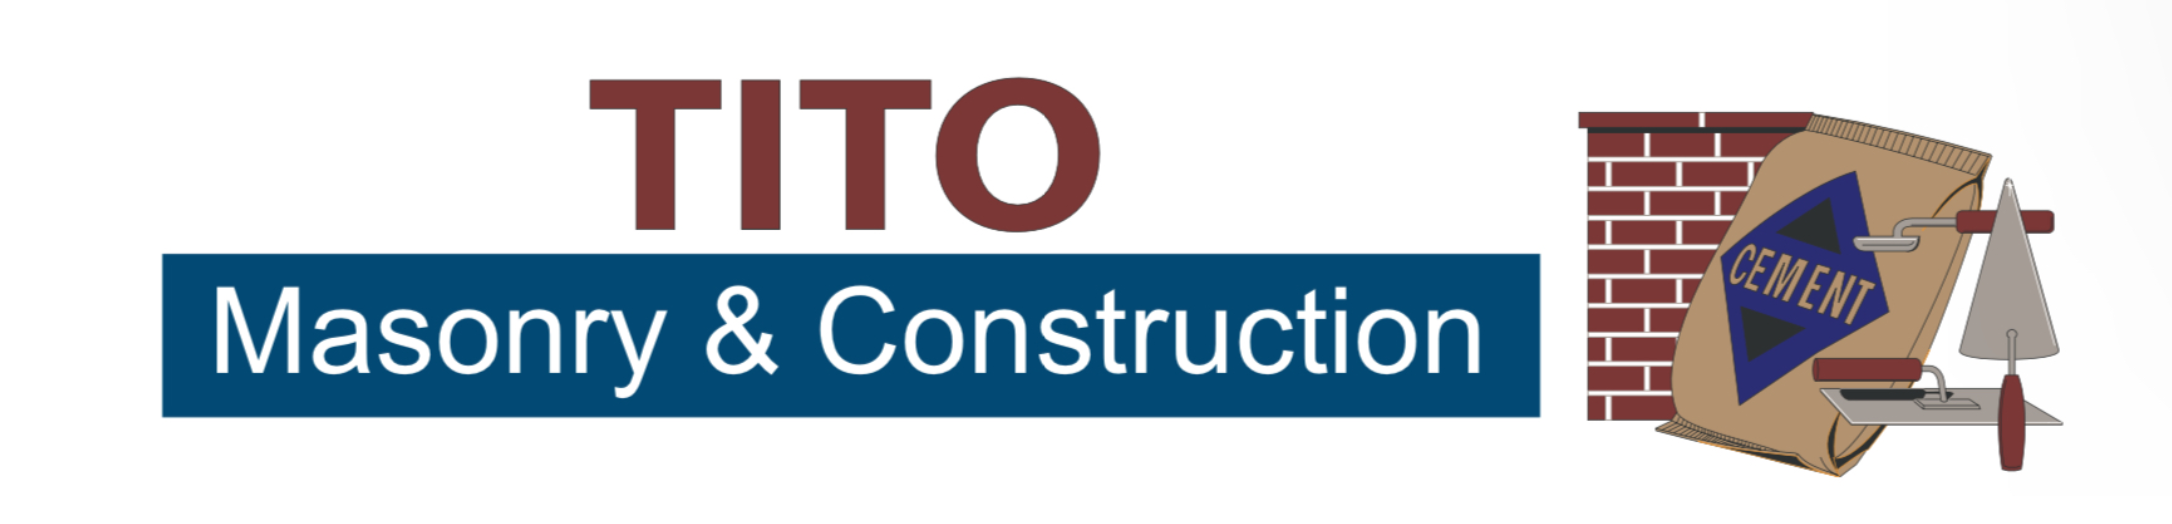 Tito Masonry & Construction